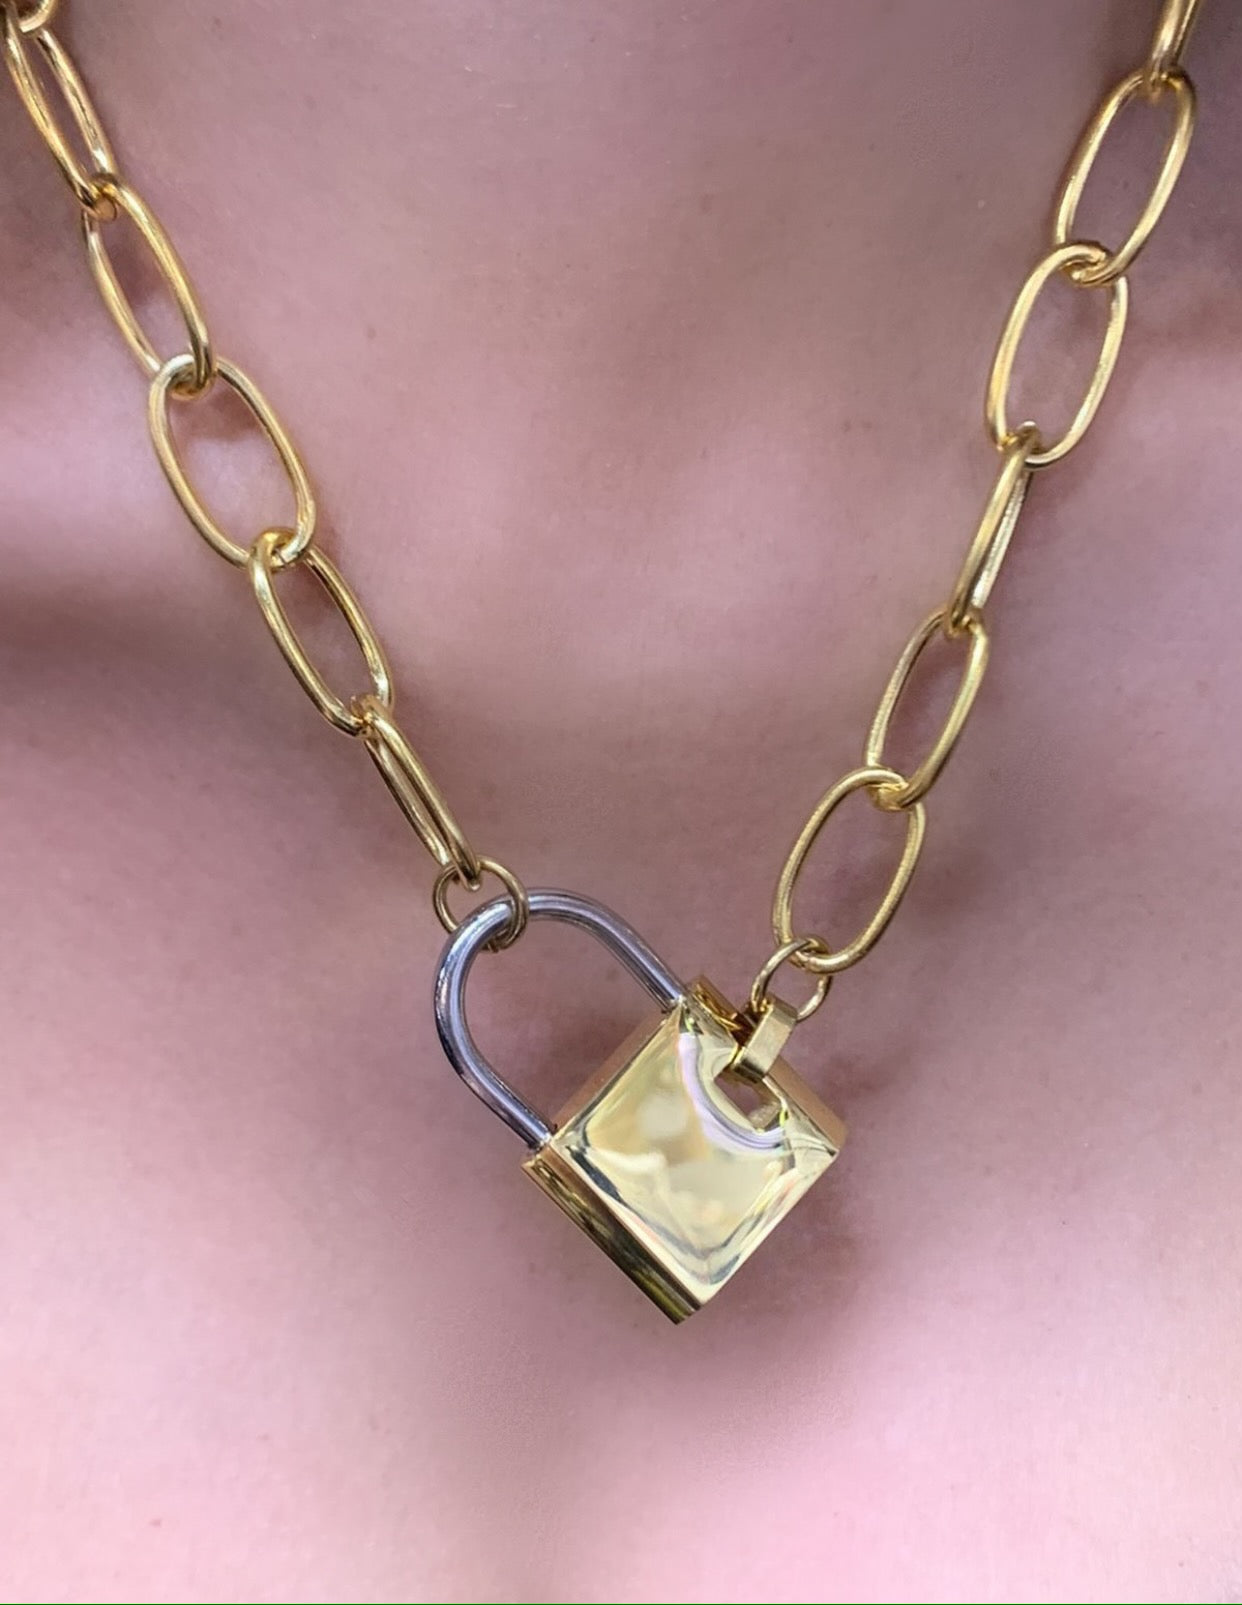 Big lock necklace